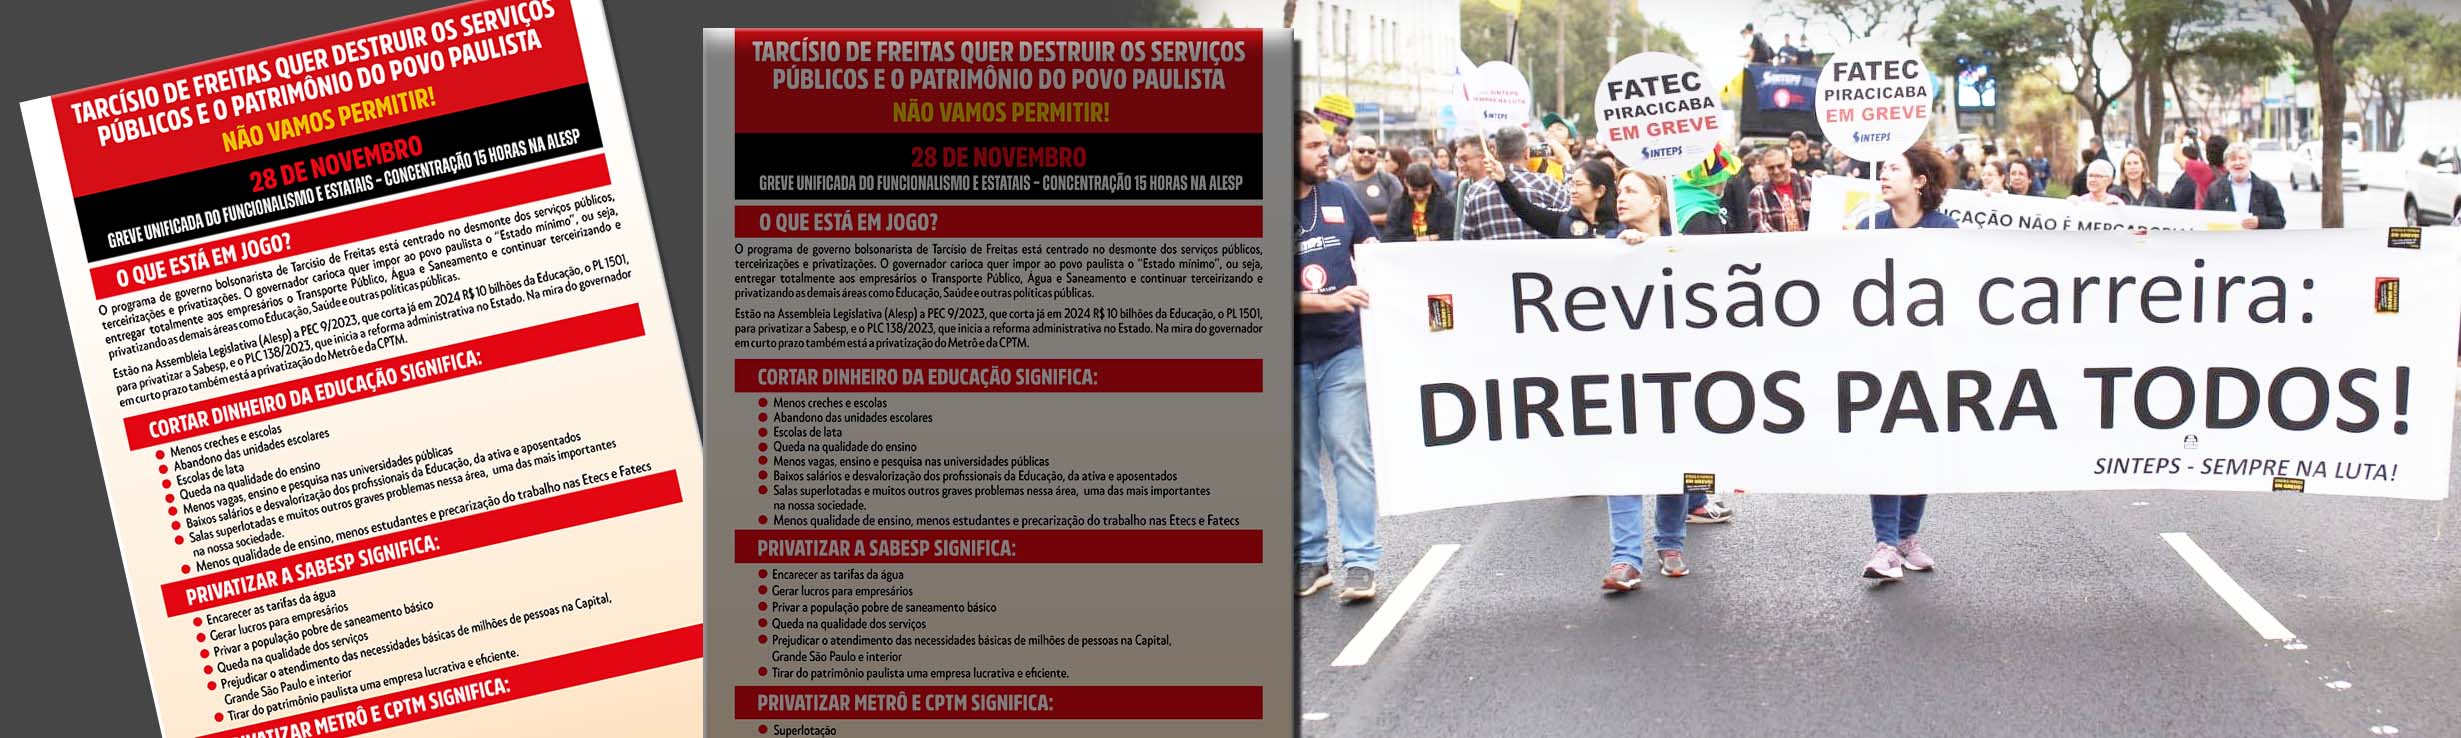 Sinteps indica adesão ao dia de greve geral do funcionalismo em 28/11: Em defesa da revisão da nossa carreira, contra os cortes na educação, as privatizações e a reforma administrativa